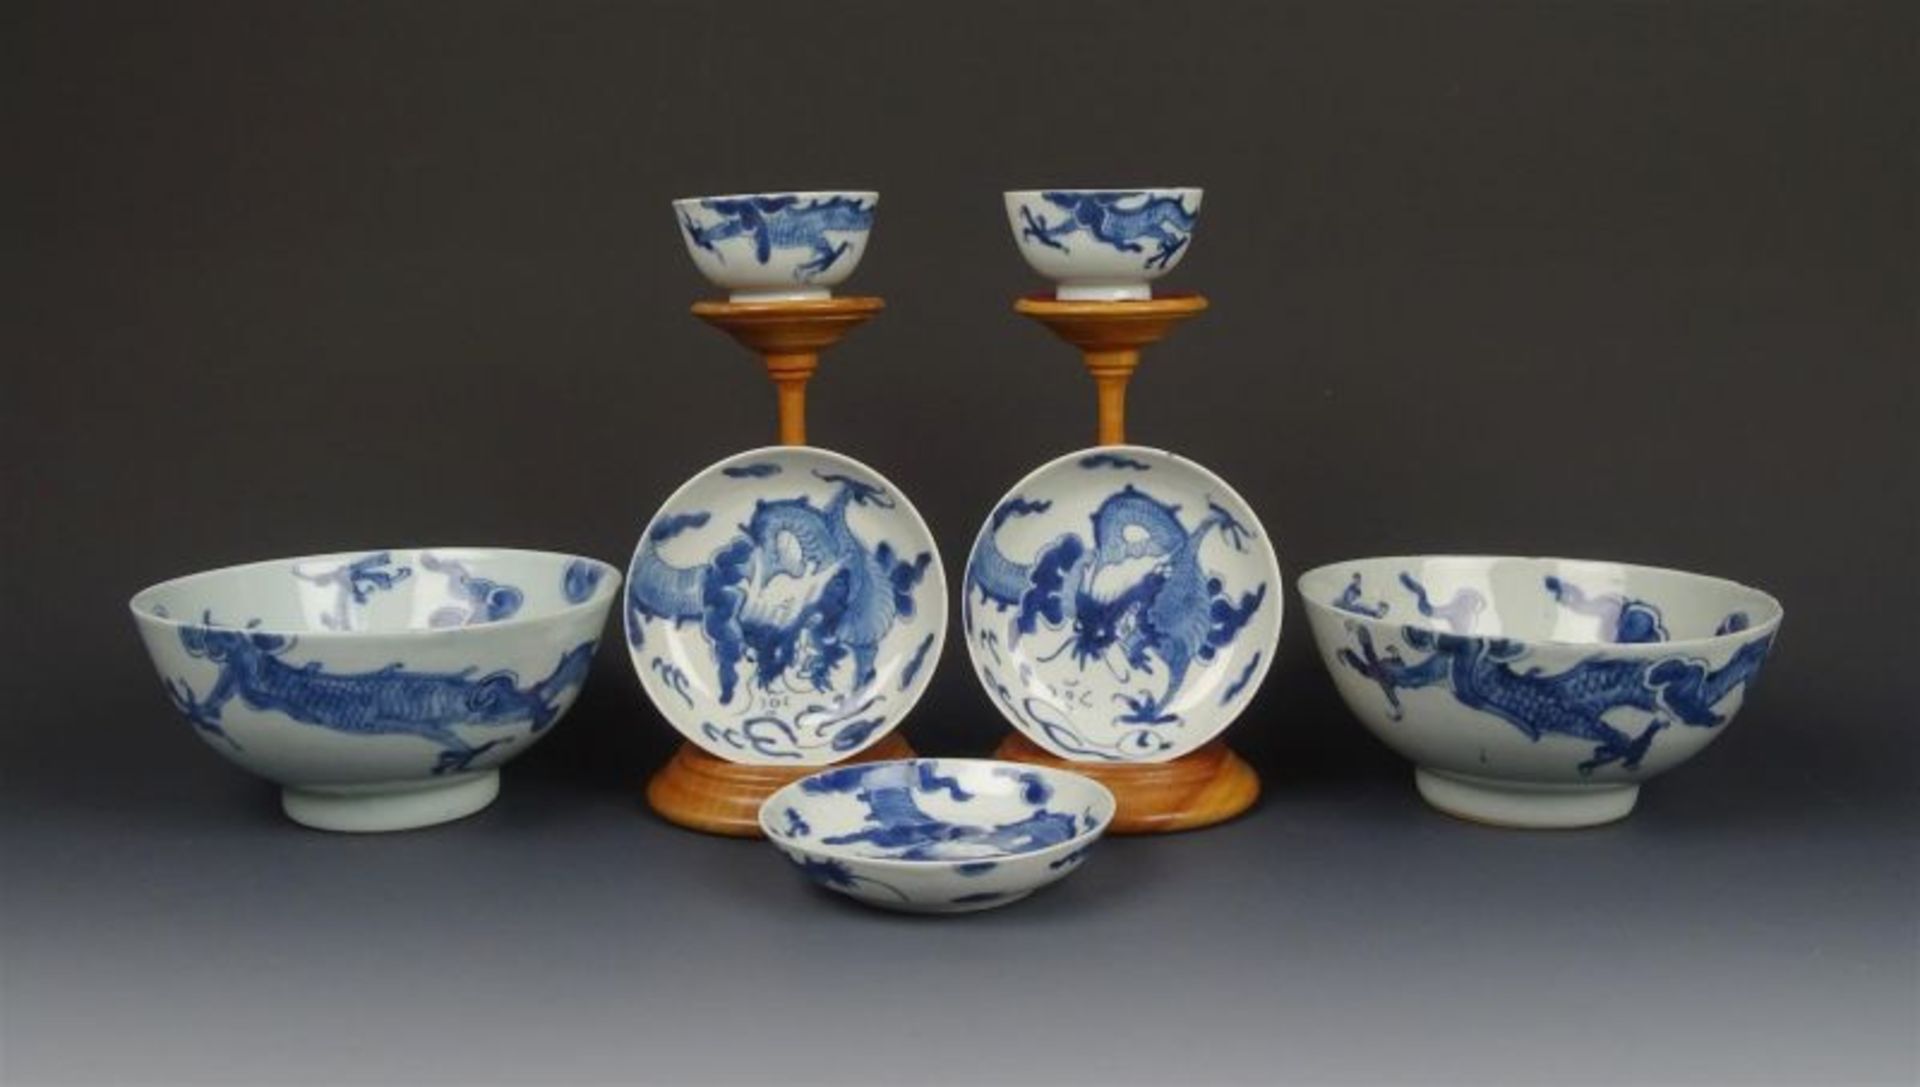 7 stuks Chinees porselein met blauw decor van draken, 18e/19e eeuw